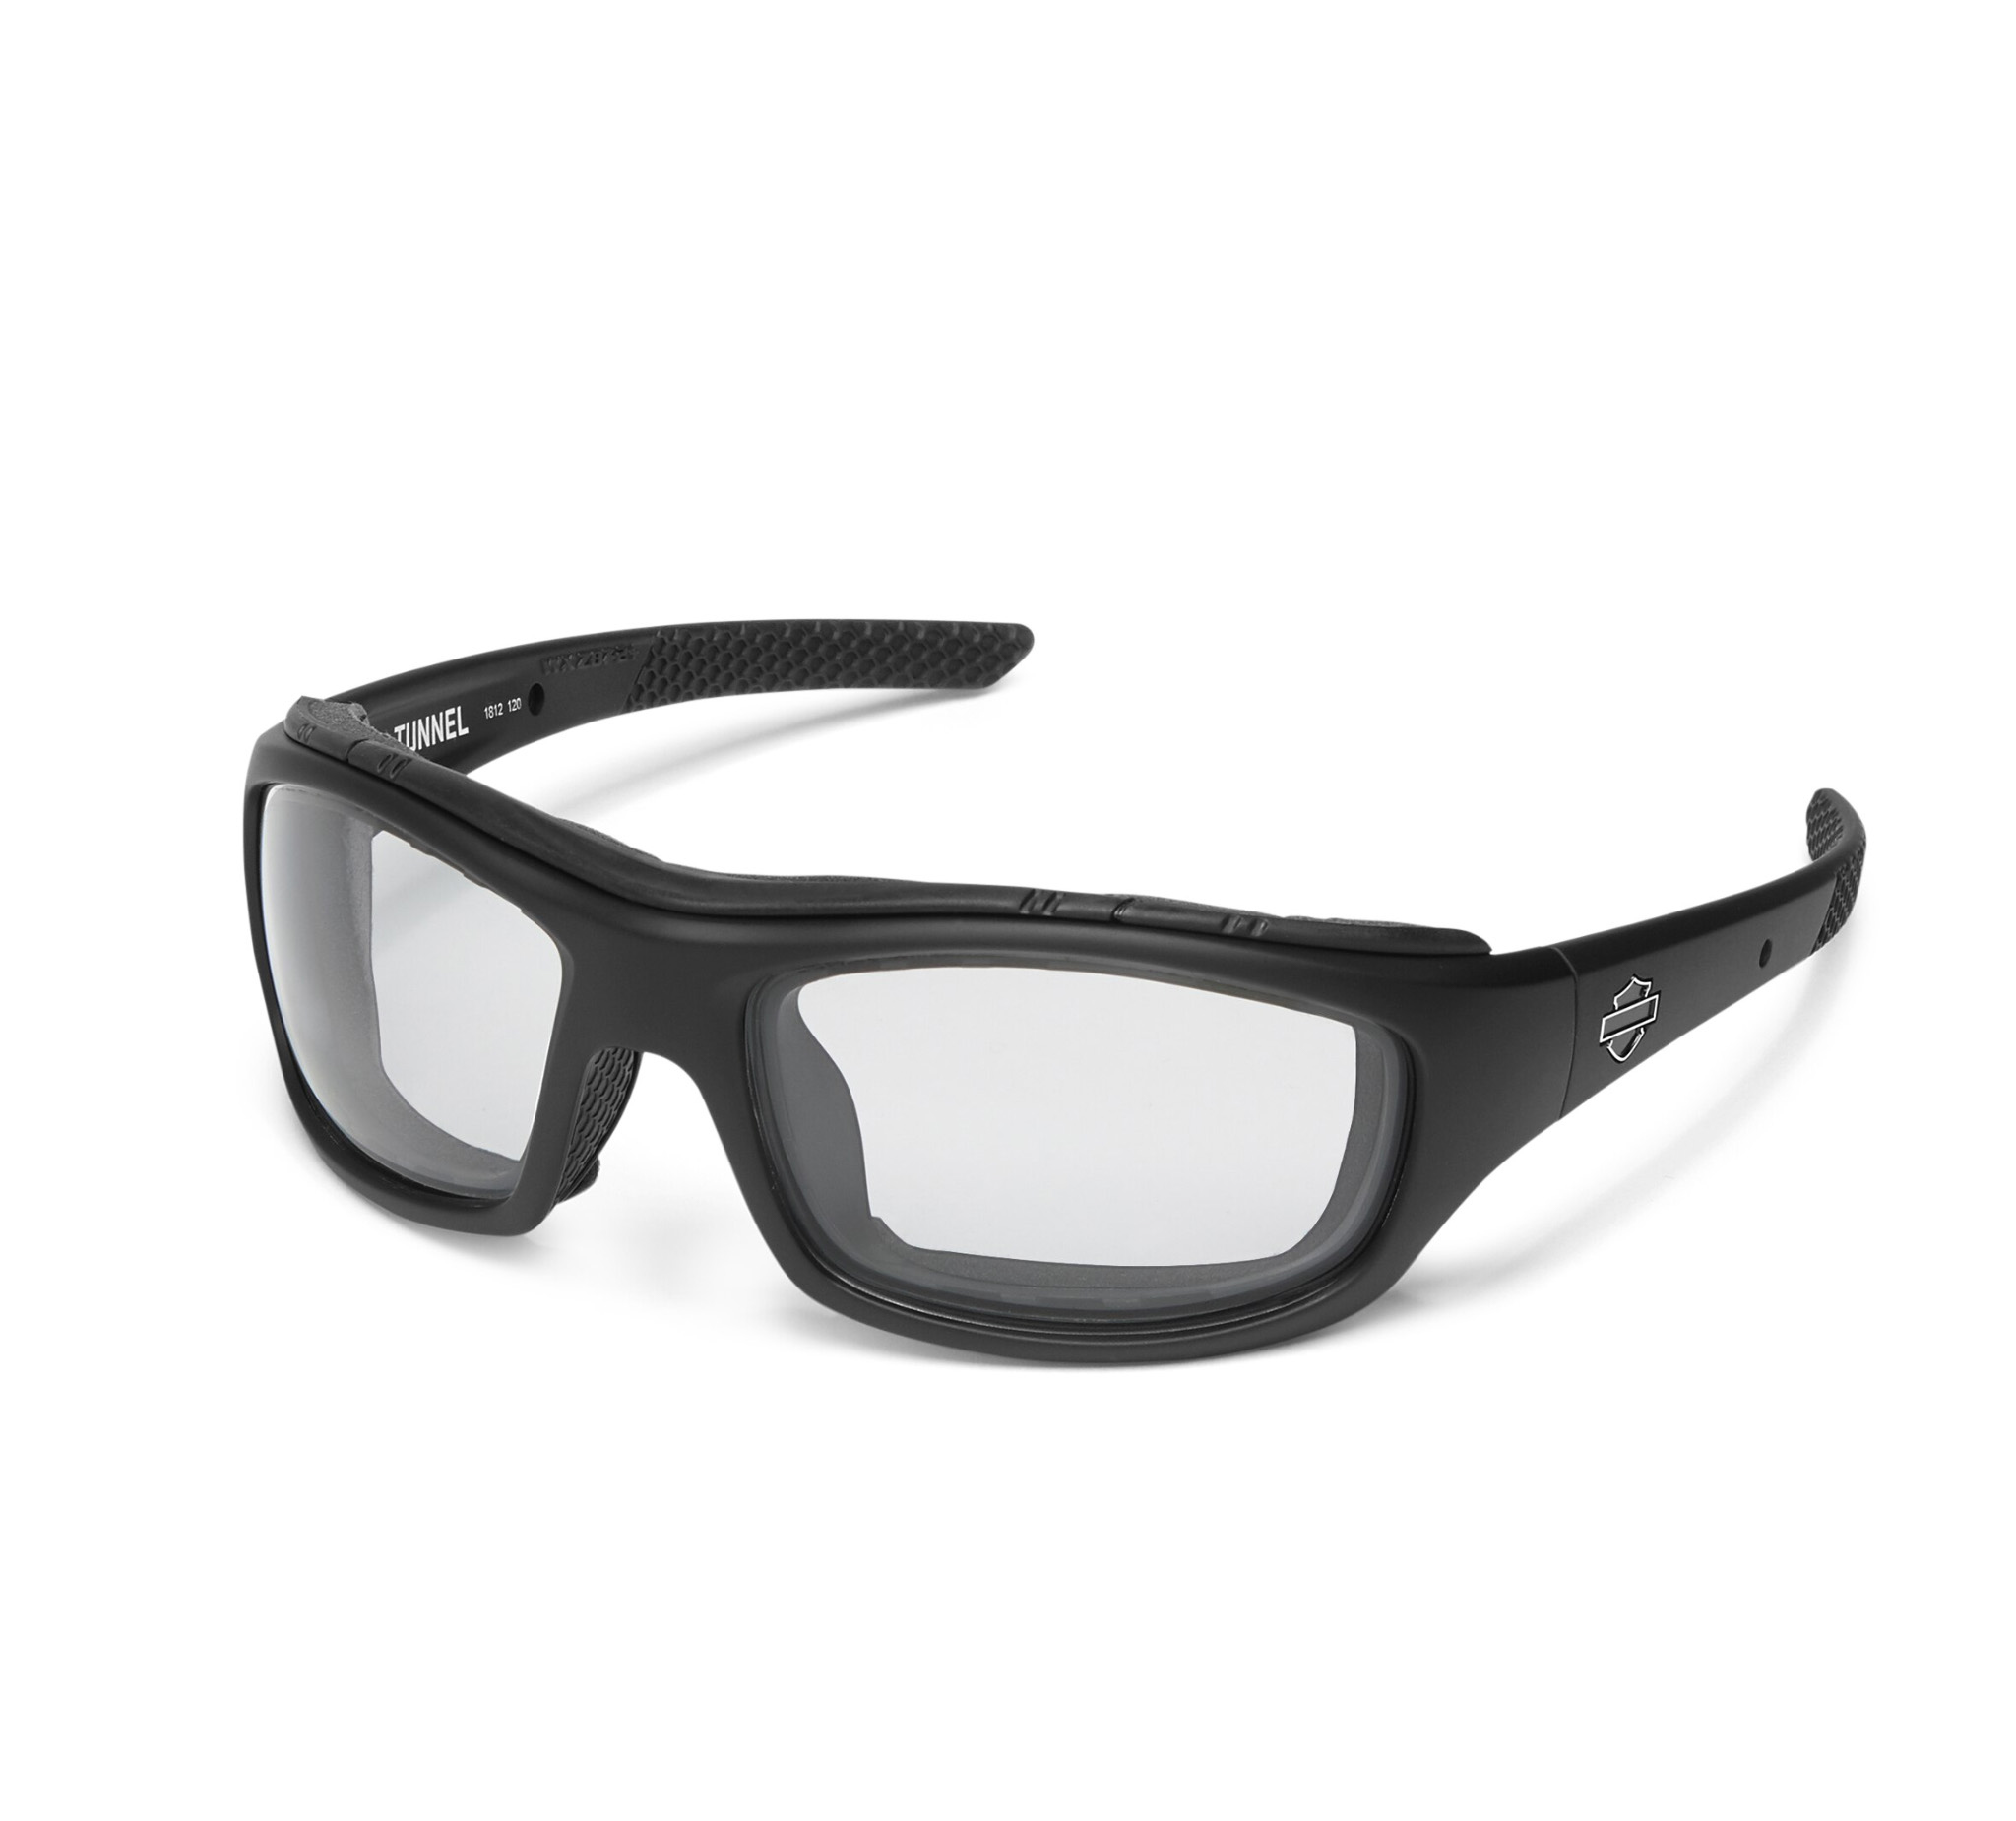 Harley Davidson Gem Sunglasses Womens Light Adjust Grey Lens Blue/Pearl Frame